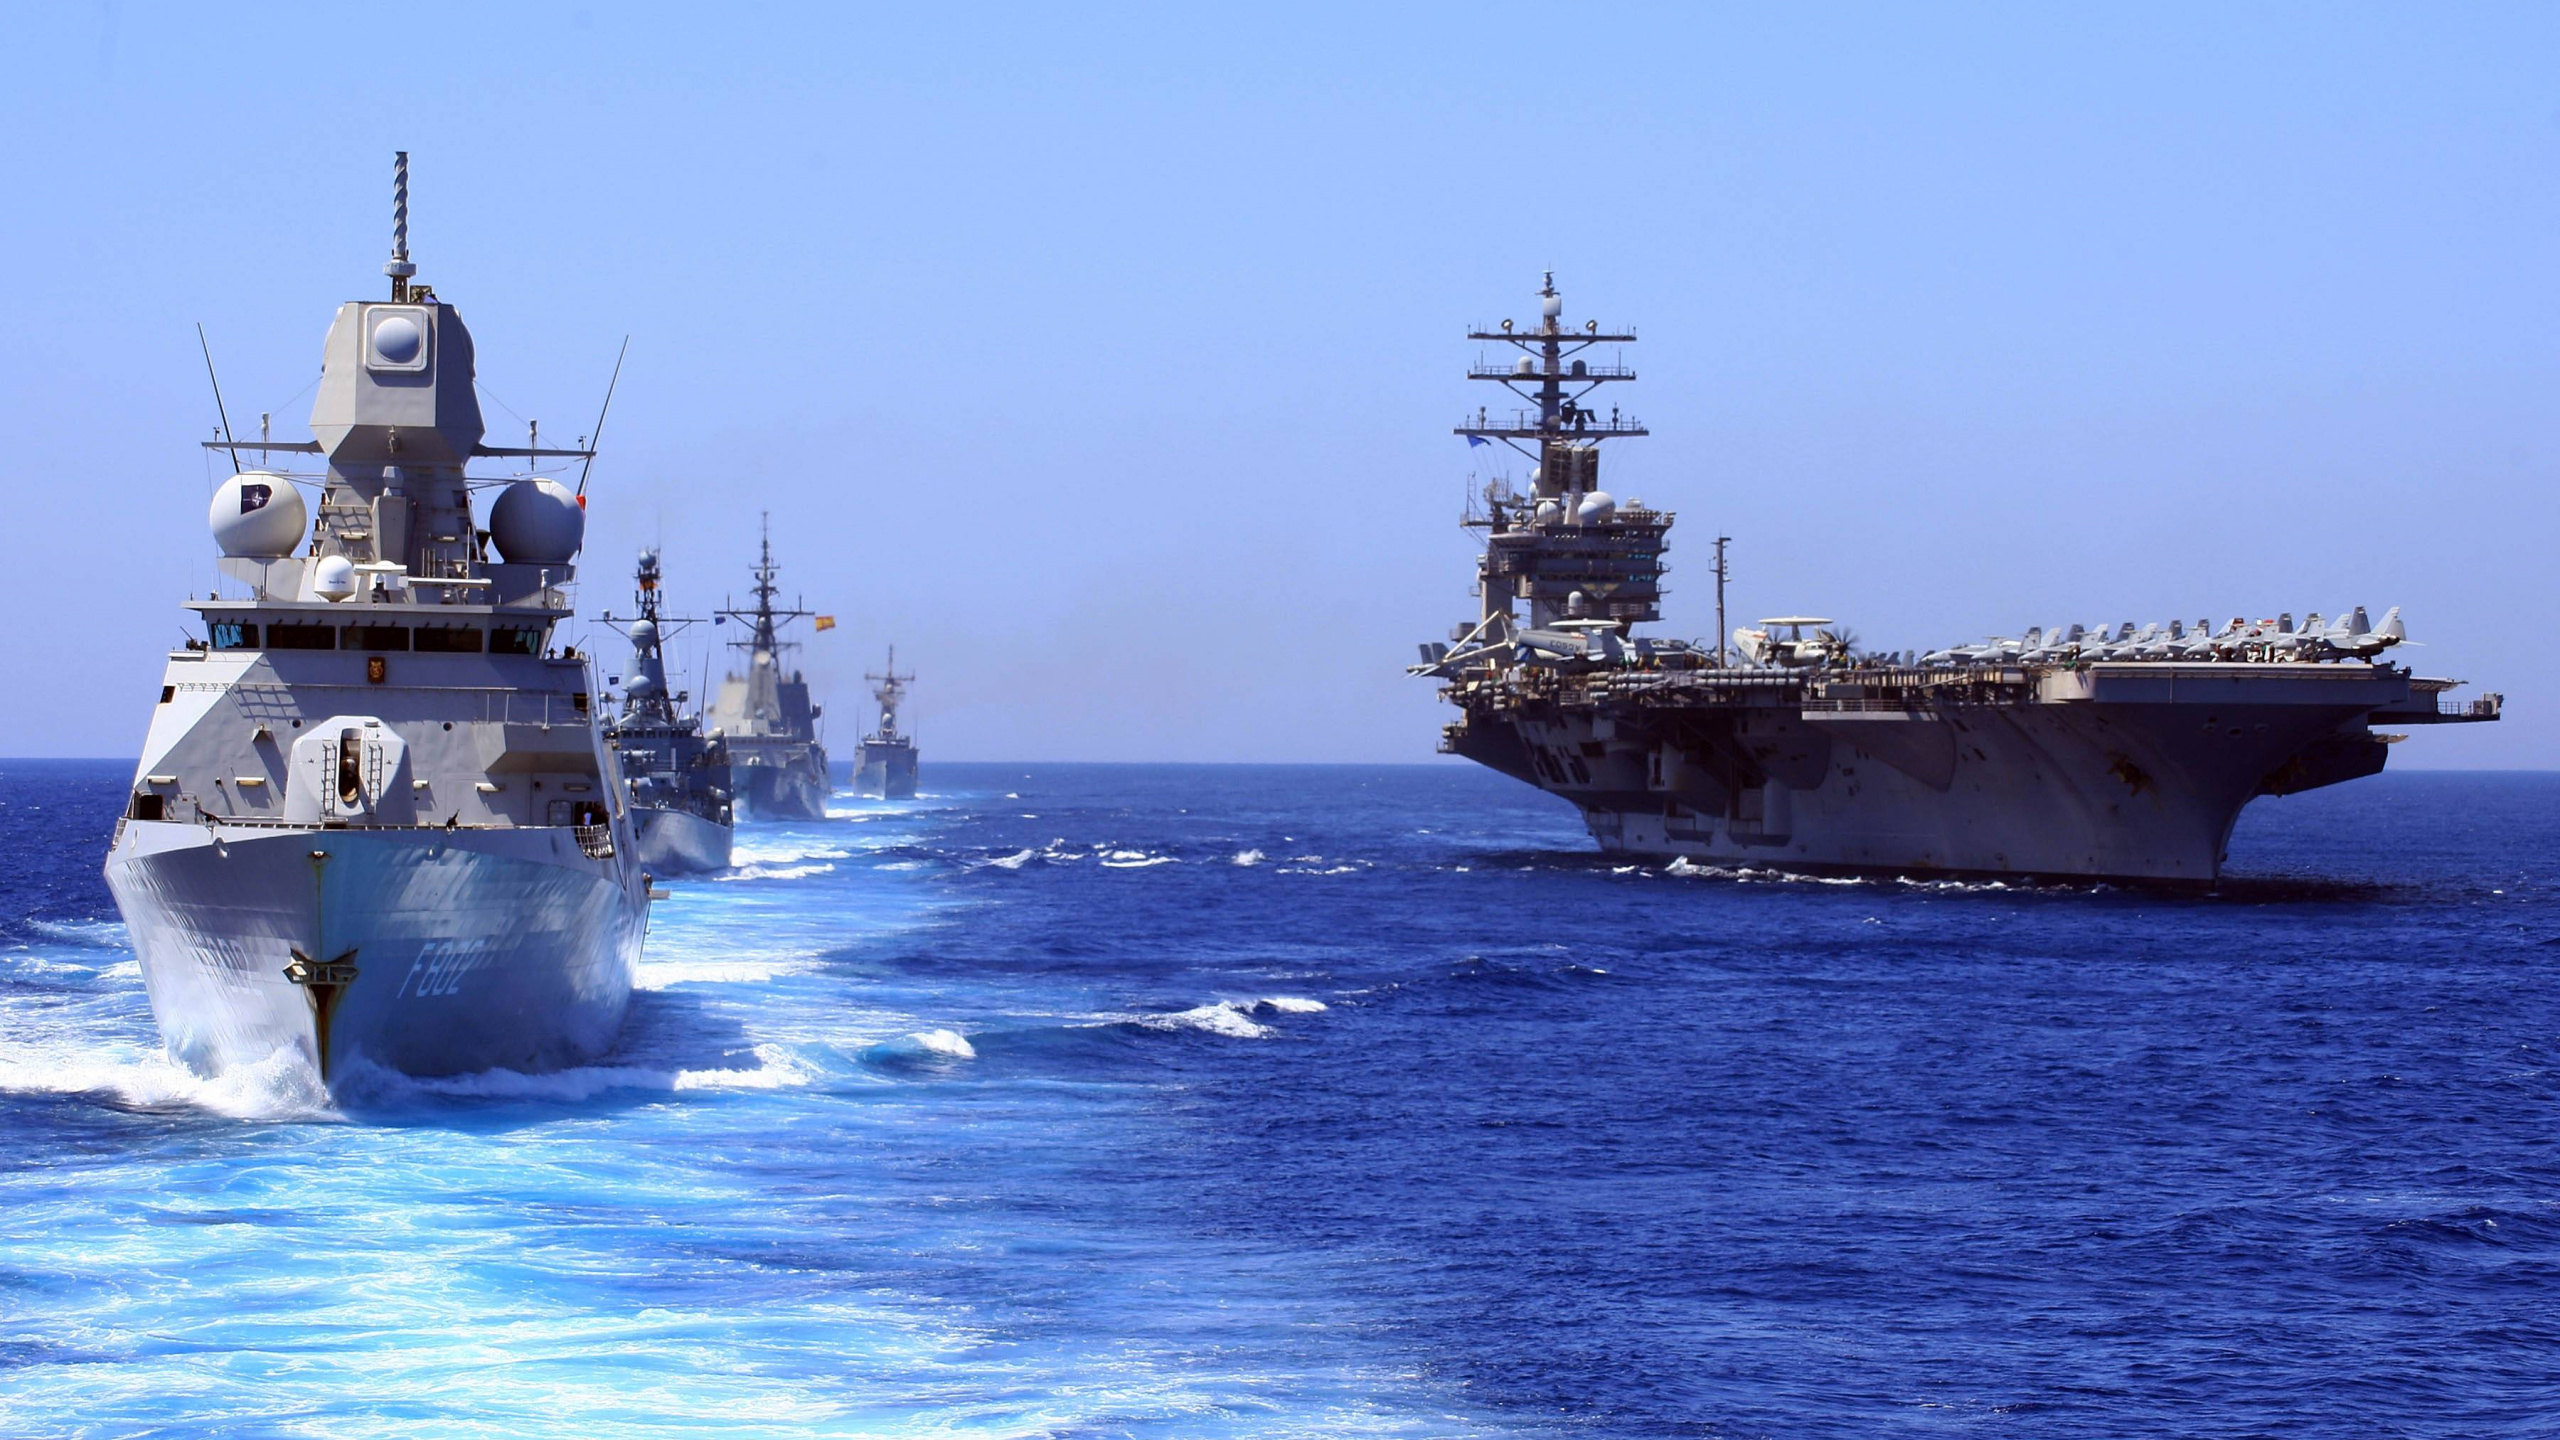 Flugzeugträger, United States Navy, Fregatte, Kriegsschiff, Marine-Schiff. Wallpaper in 2560x1440 Resolution